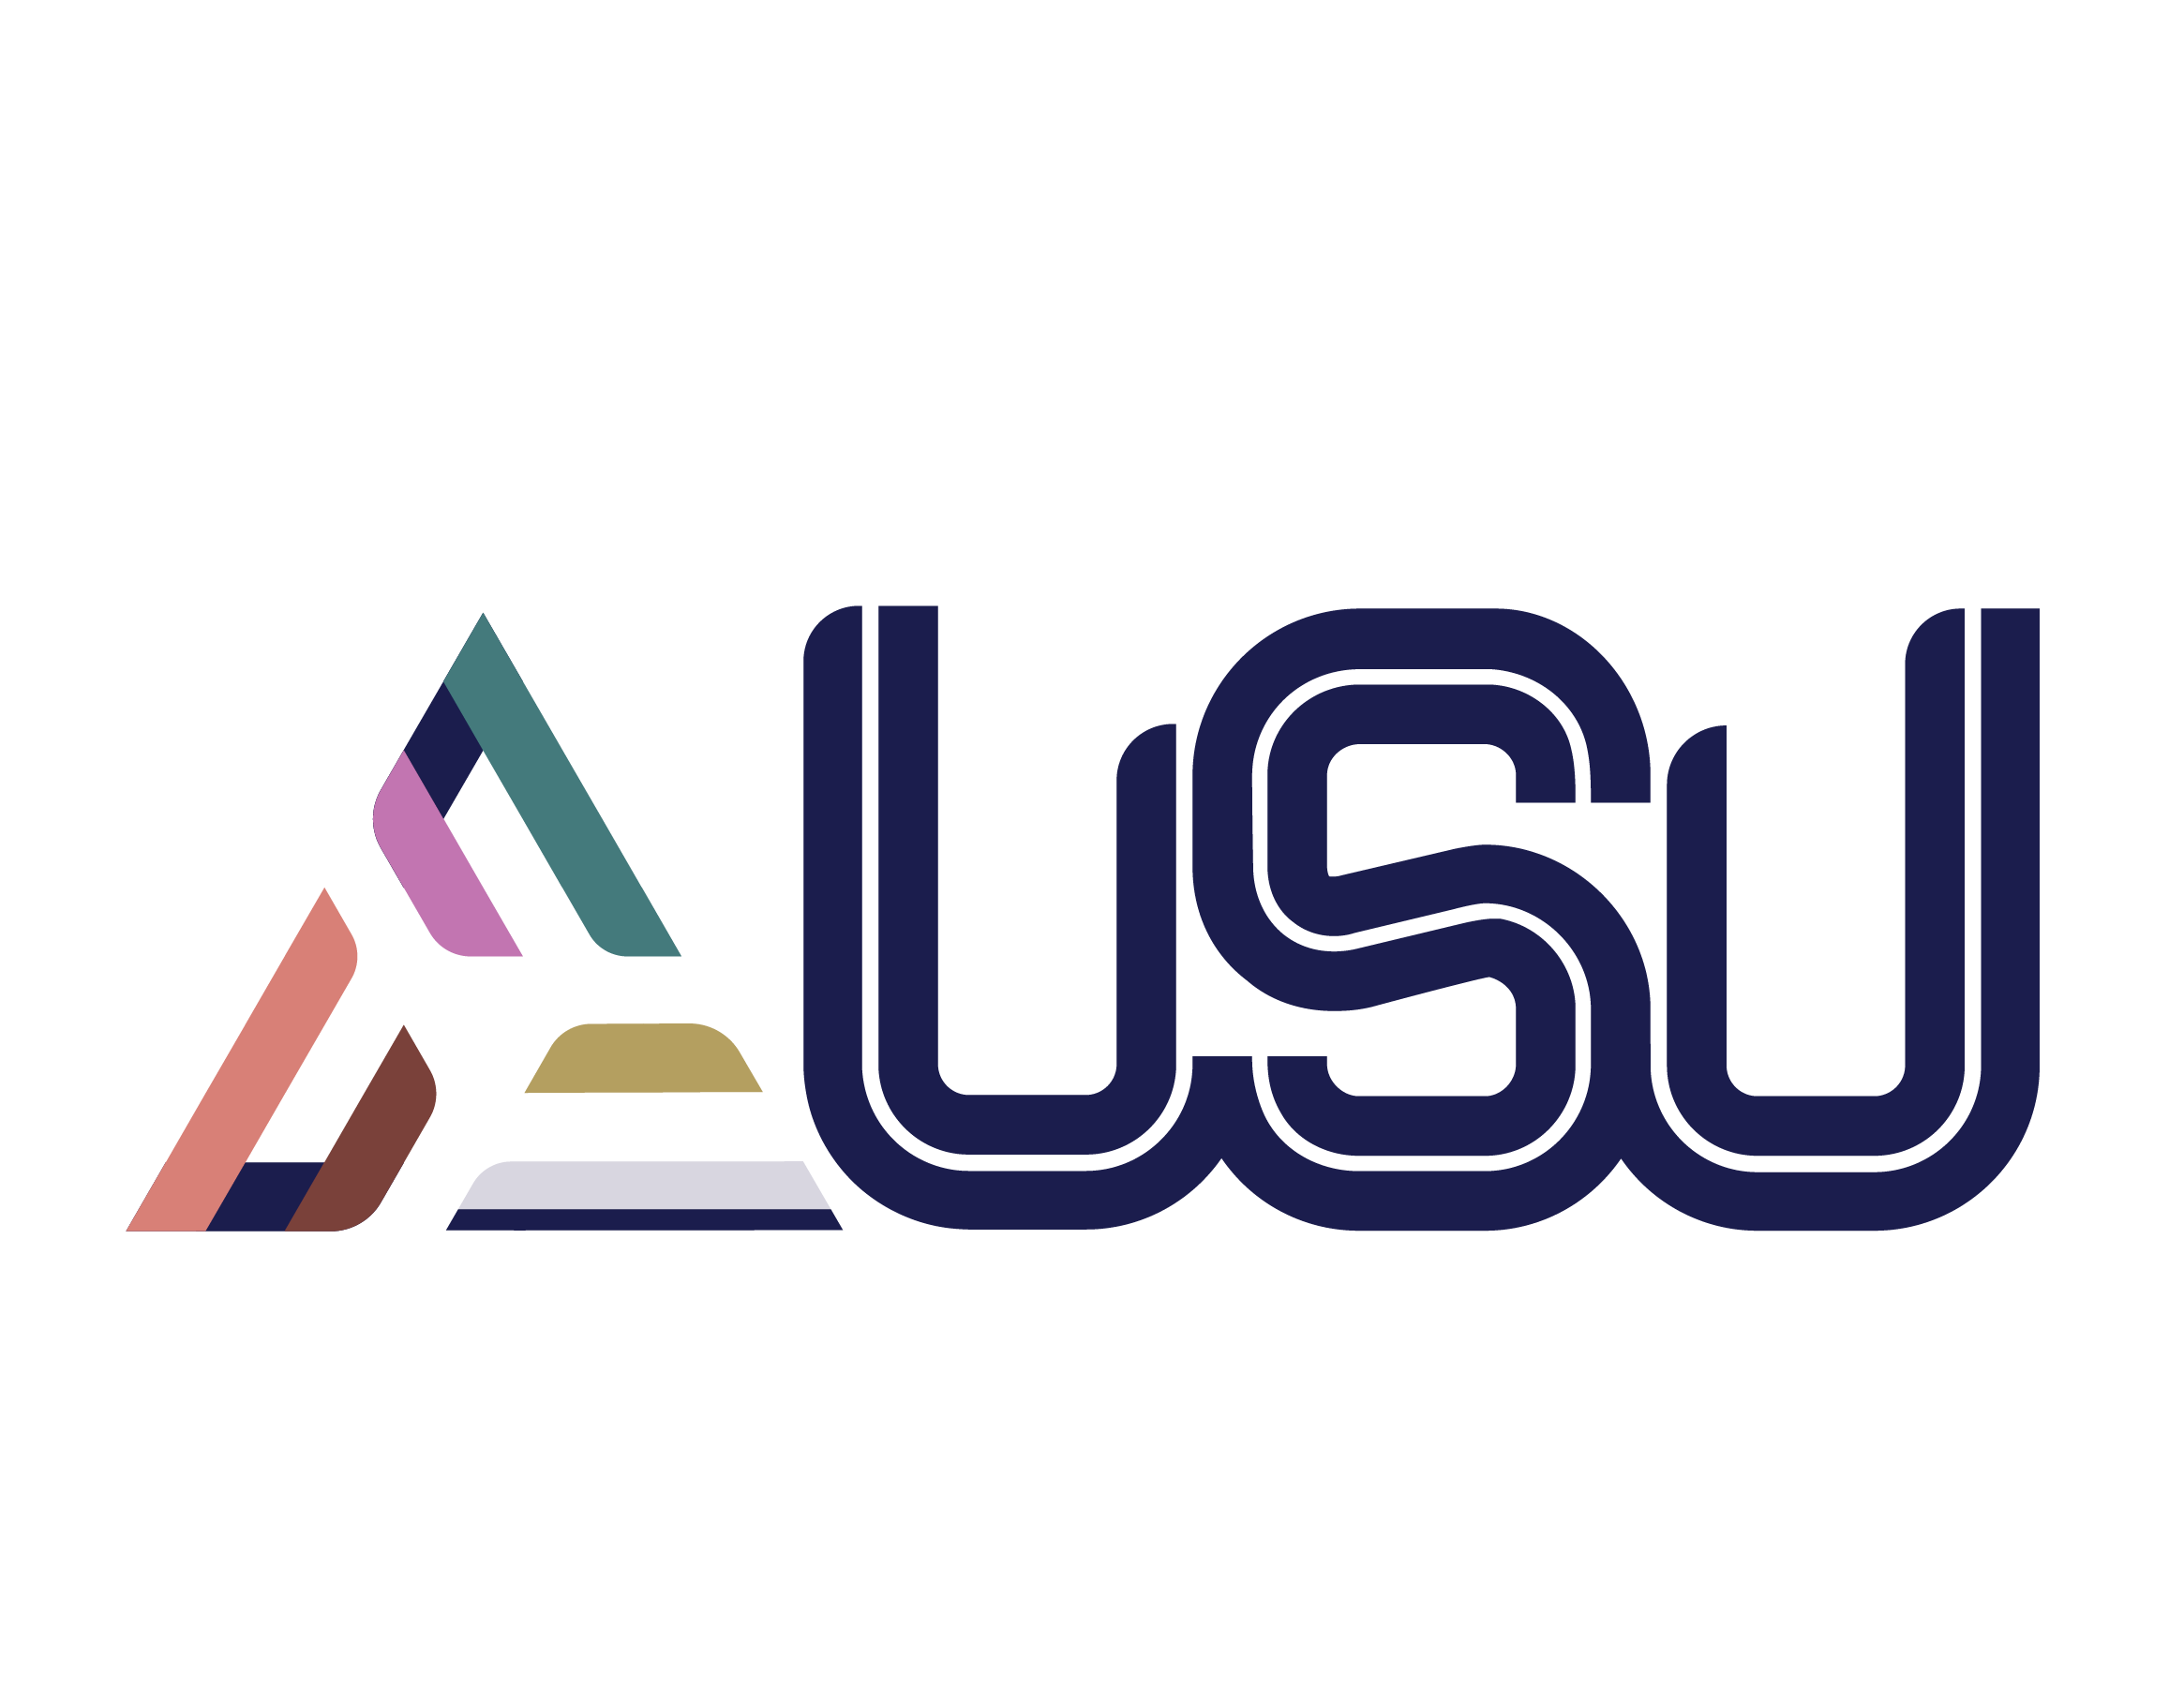 Full Colour AUSU logo